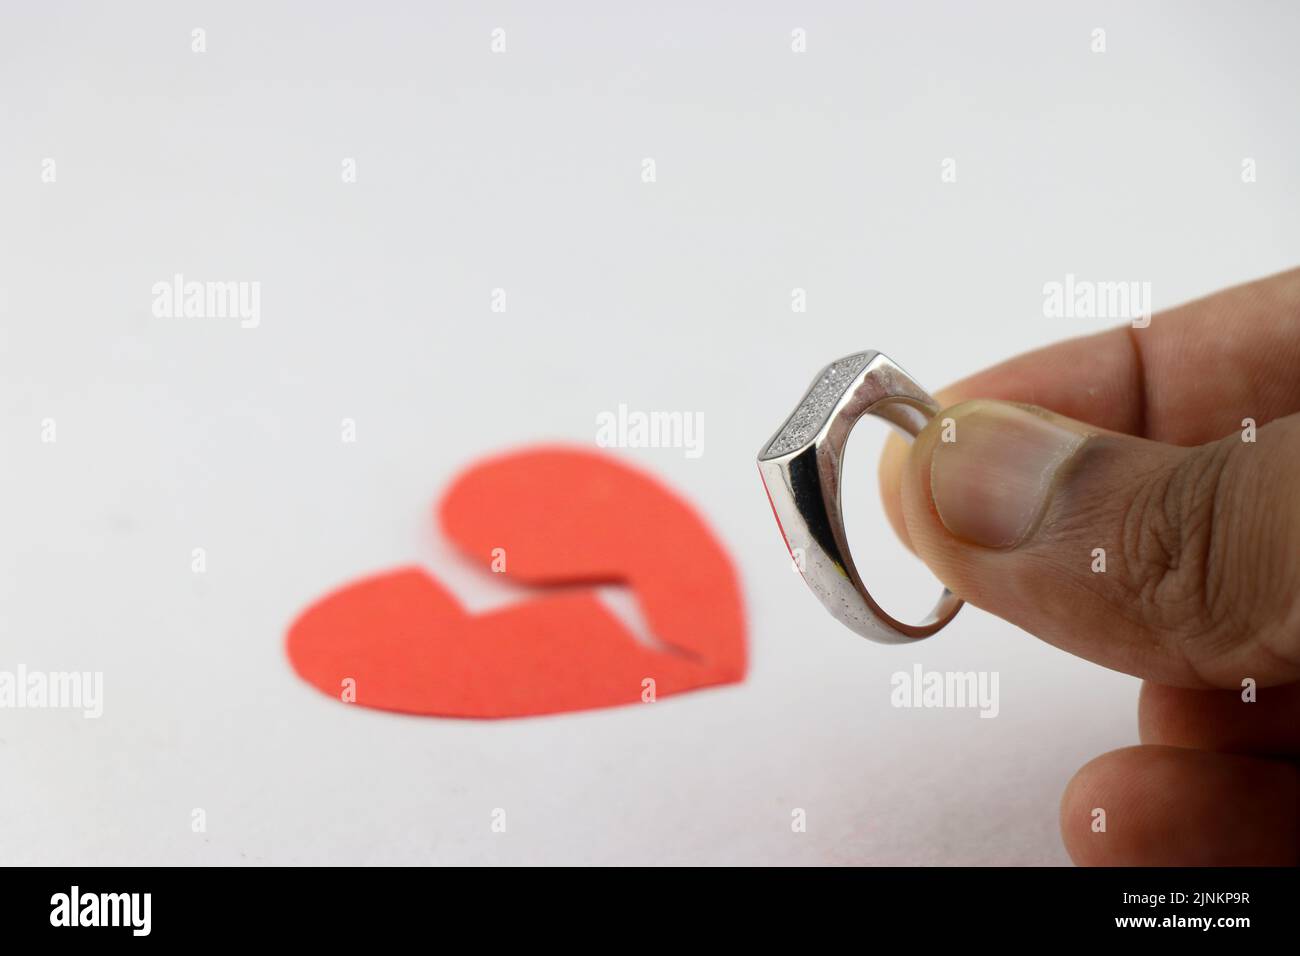 Relation ou amour proposition avec un anneau mais qui mène à la rupture de coeur concept montré avec un papier rouge coeur brisé et un anneau d'argent Banque D'Images